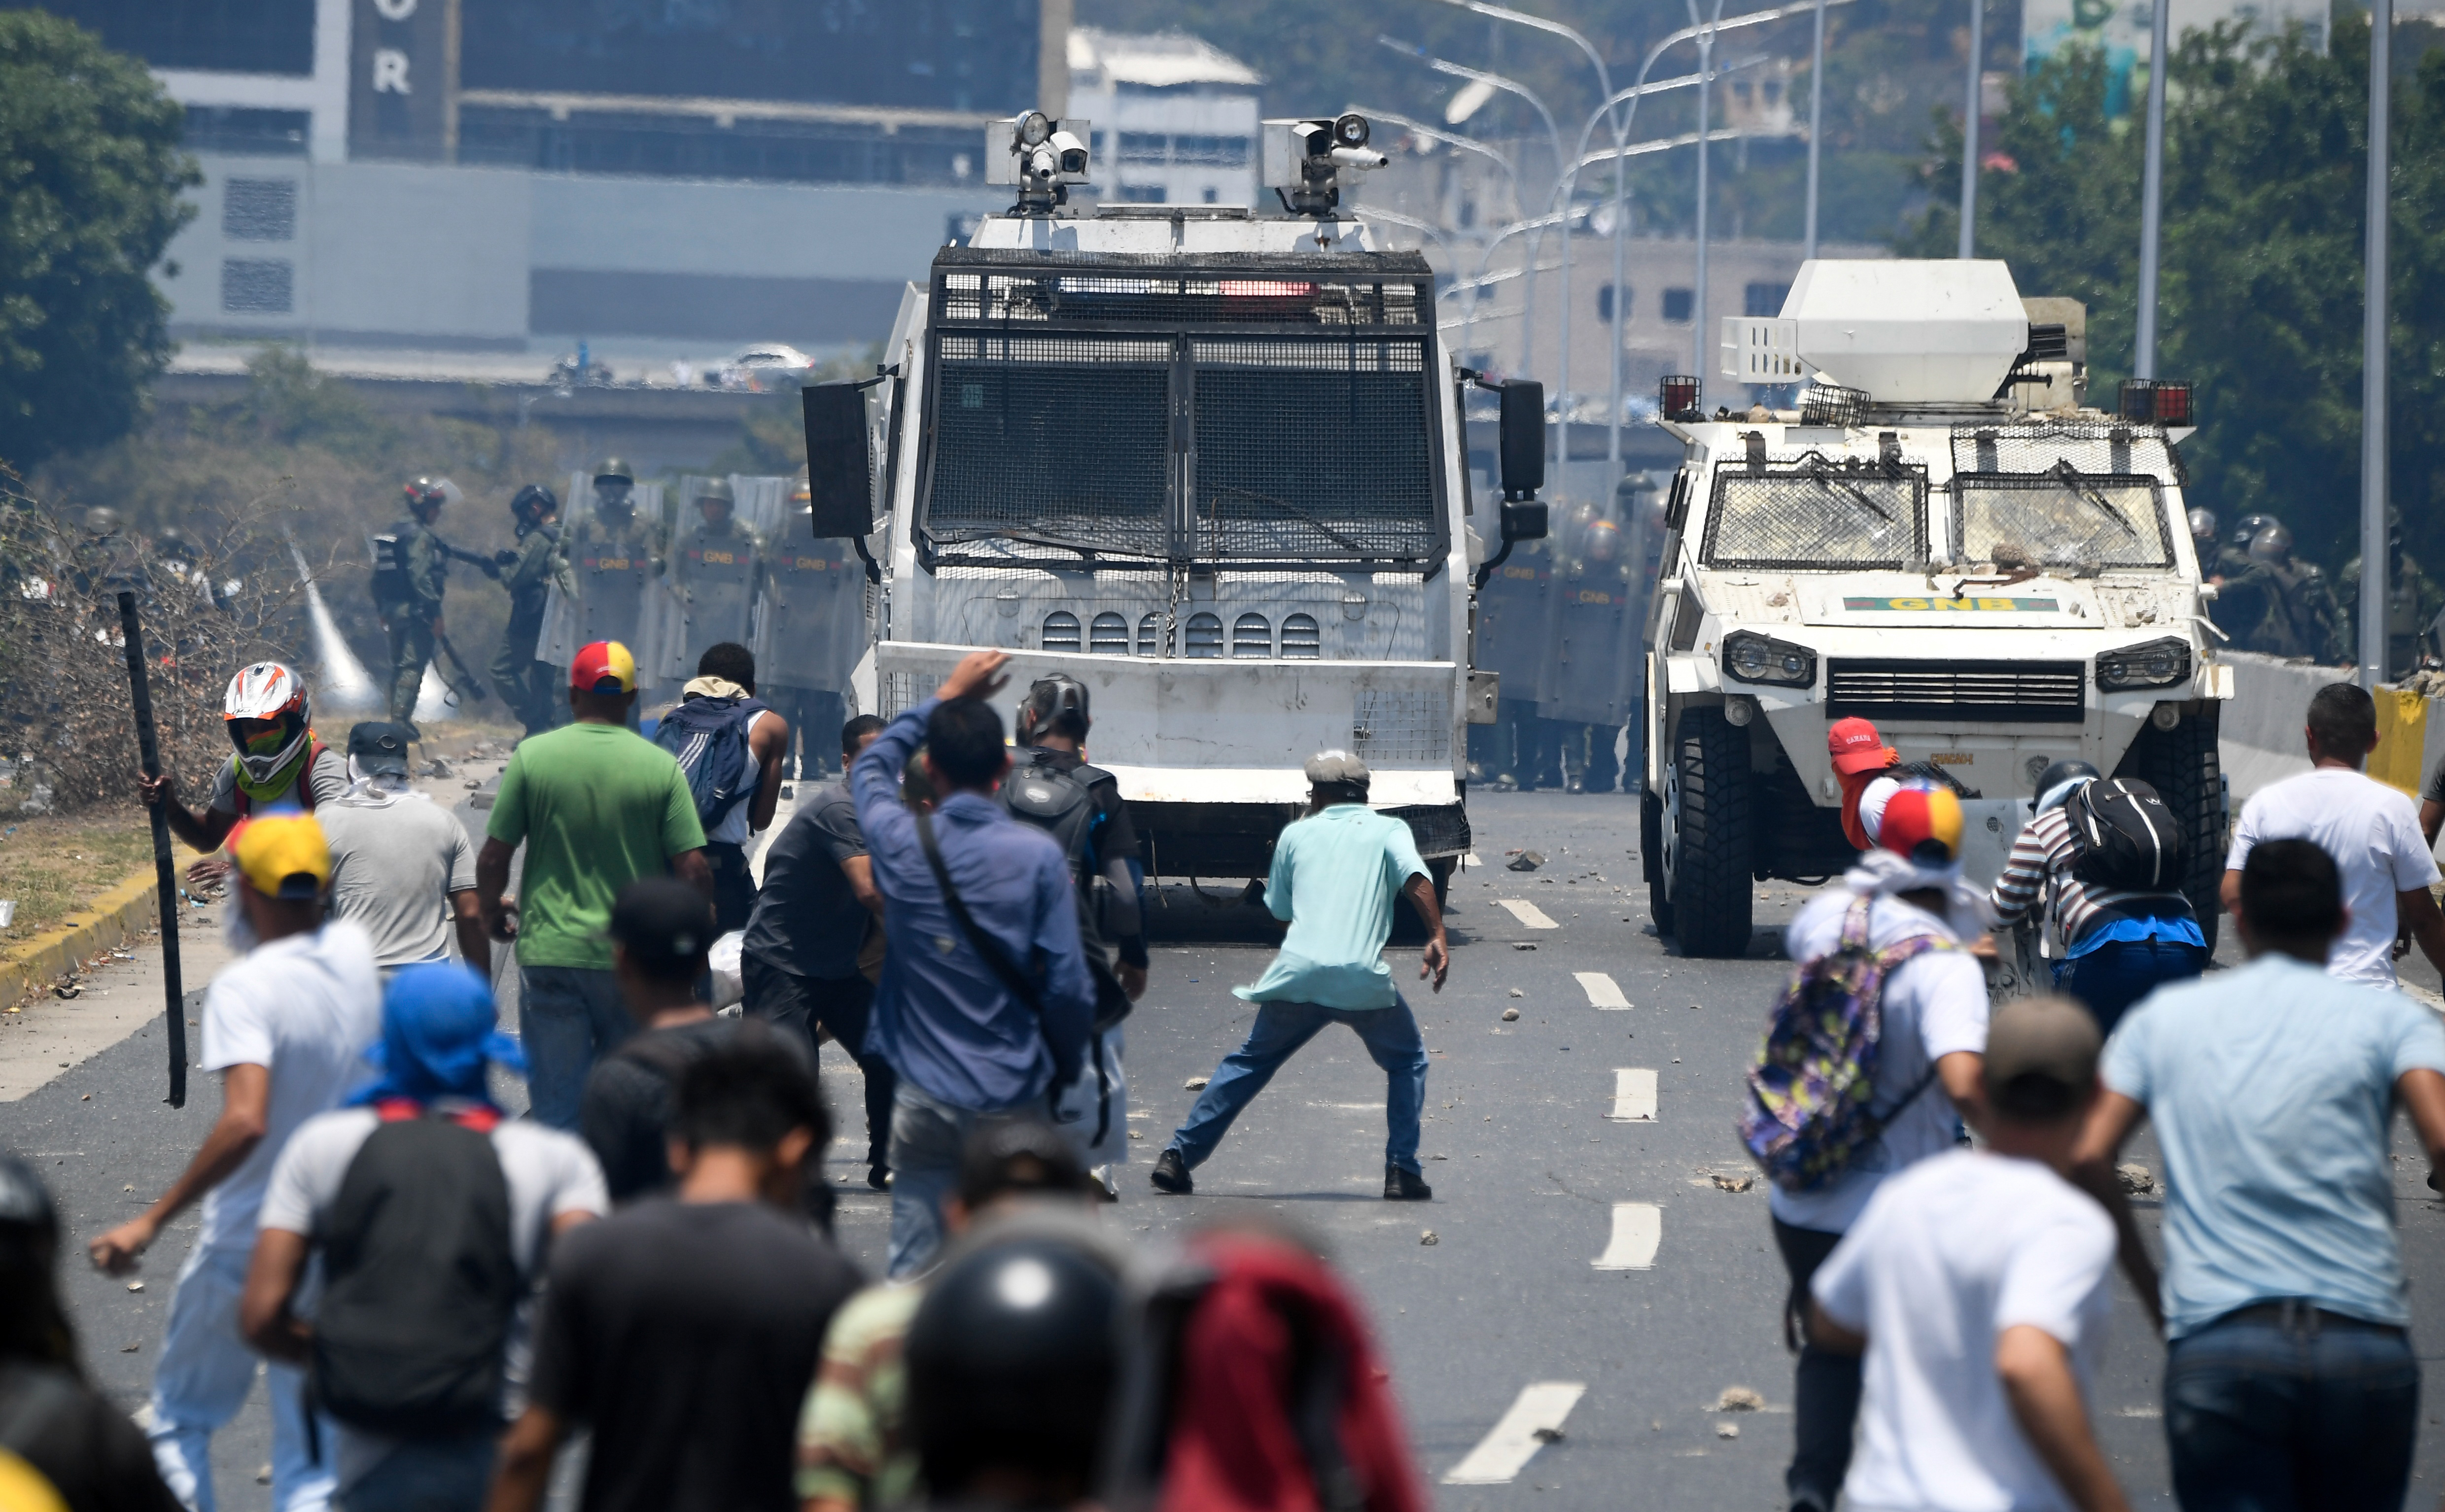 Servicios de inteligencia bajo el régimen de Venezuela cometen crímenes de lesa humanidad contra la oposición, según la ONU